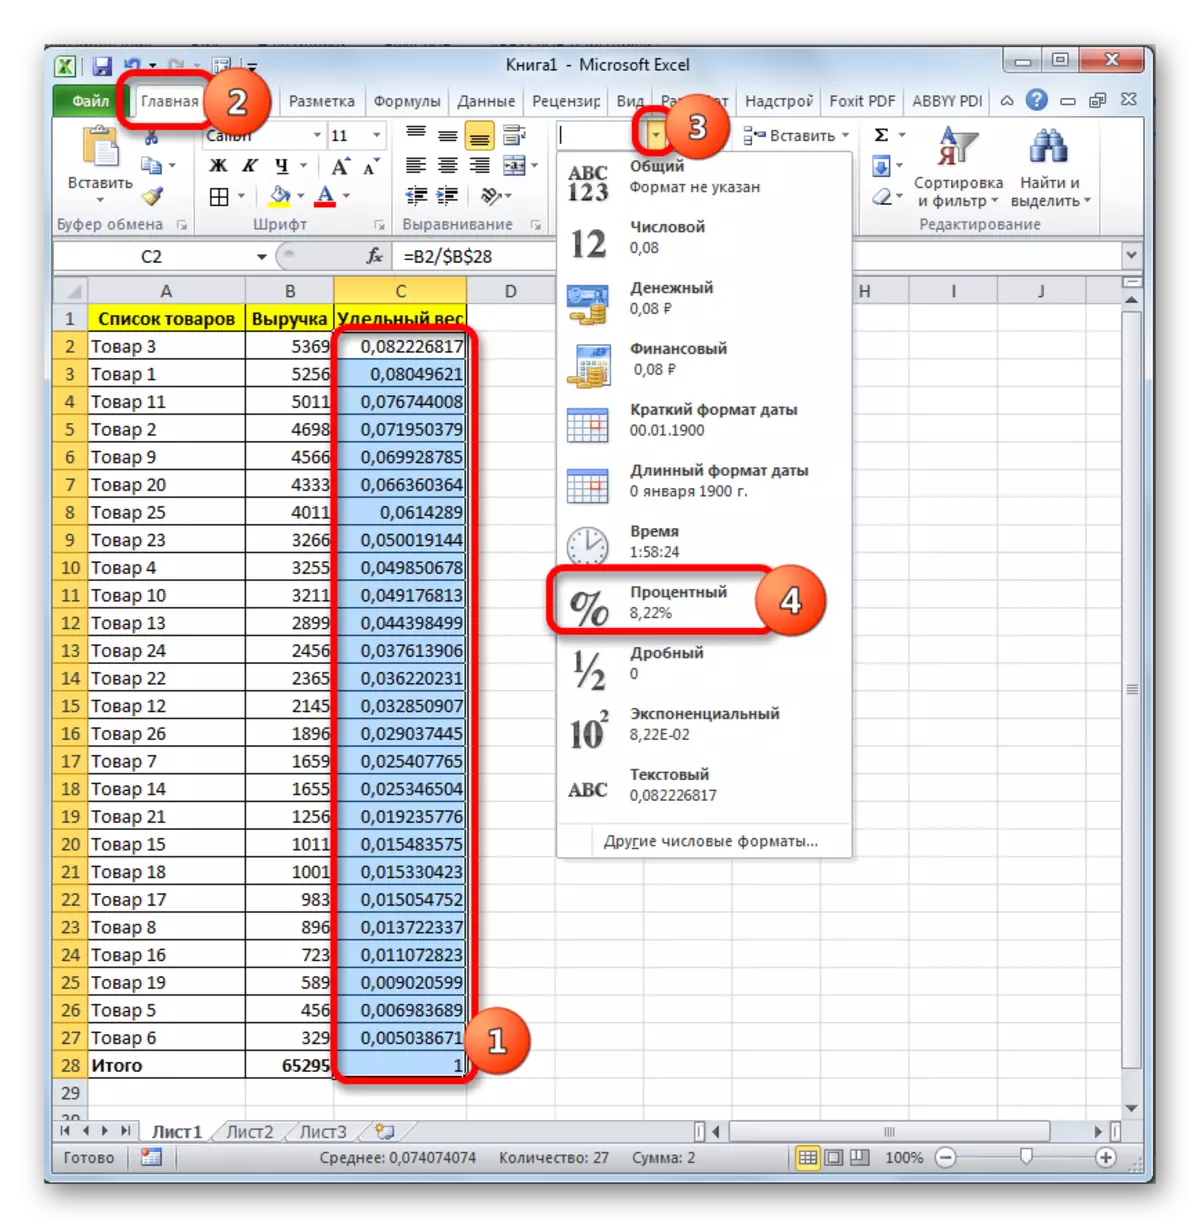 Microsoft Excel에서 명확한 데이터 형식 설치